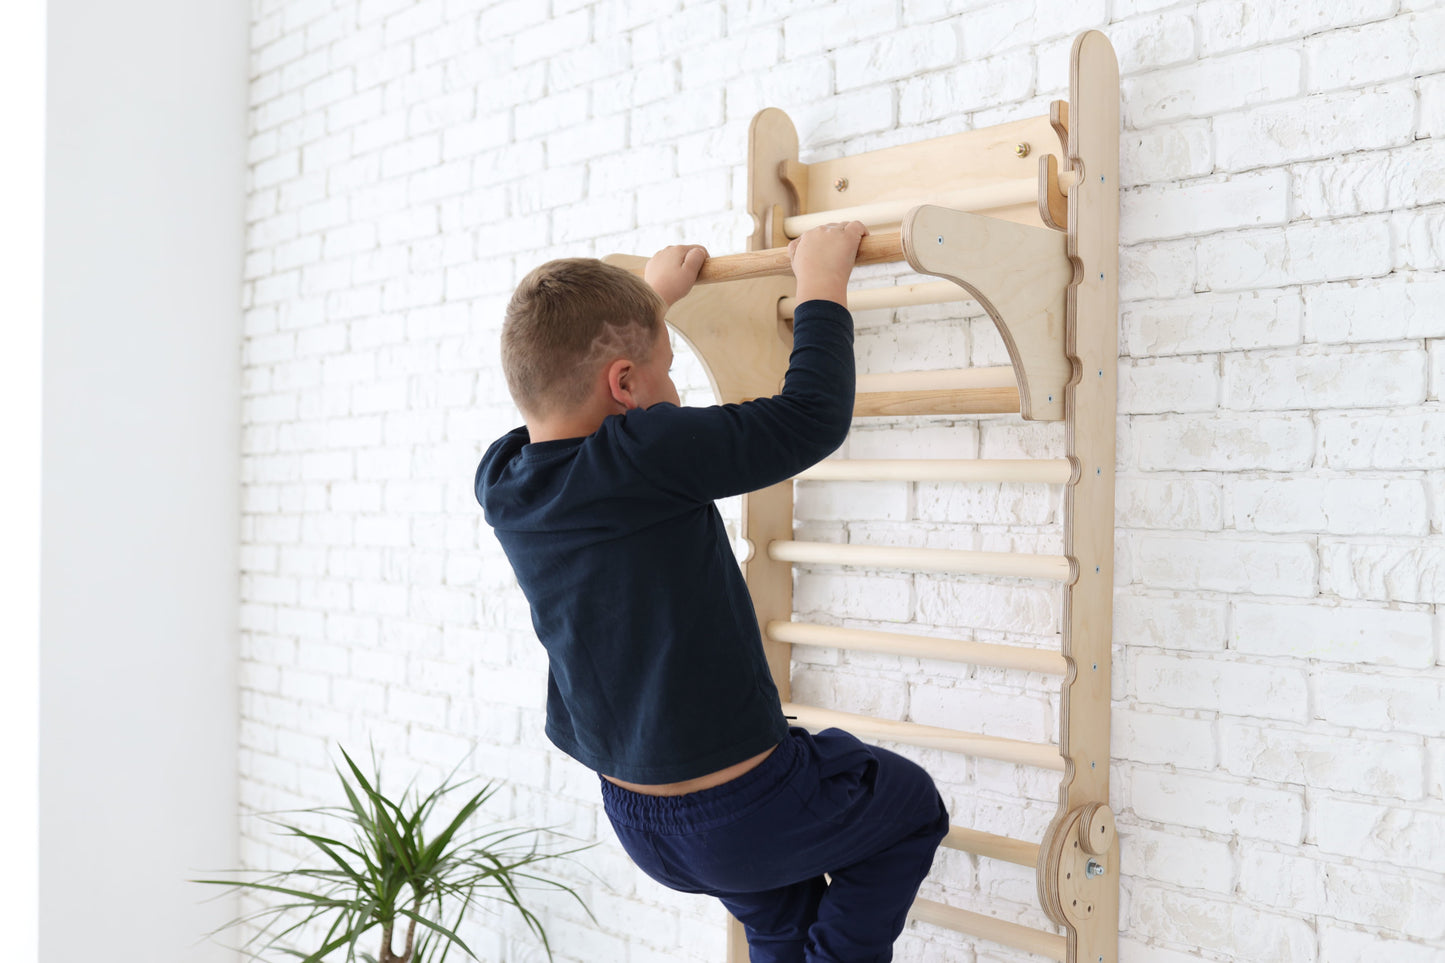 5in1: Swedish Wall / Wooden Wall Bars For Kids + Swing Set + Slide + Art Add-On